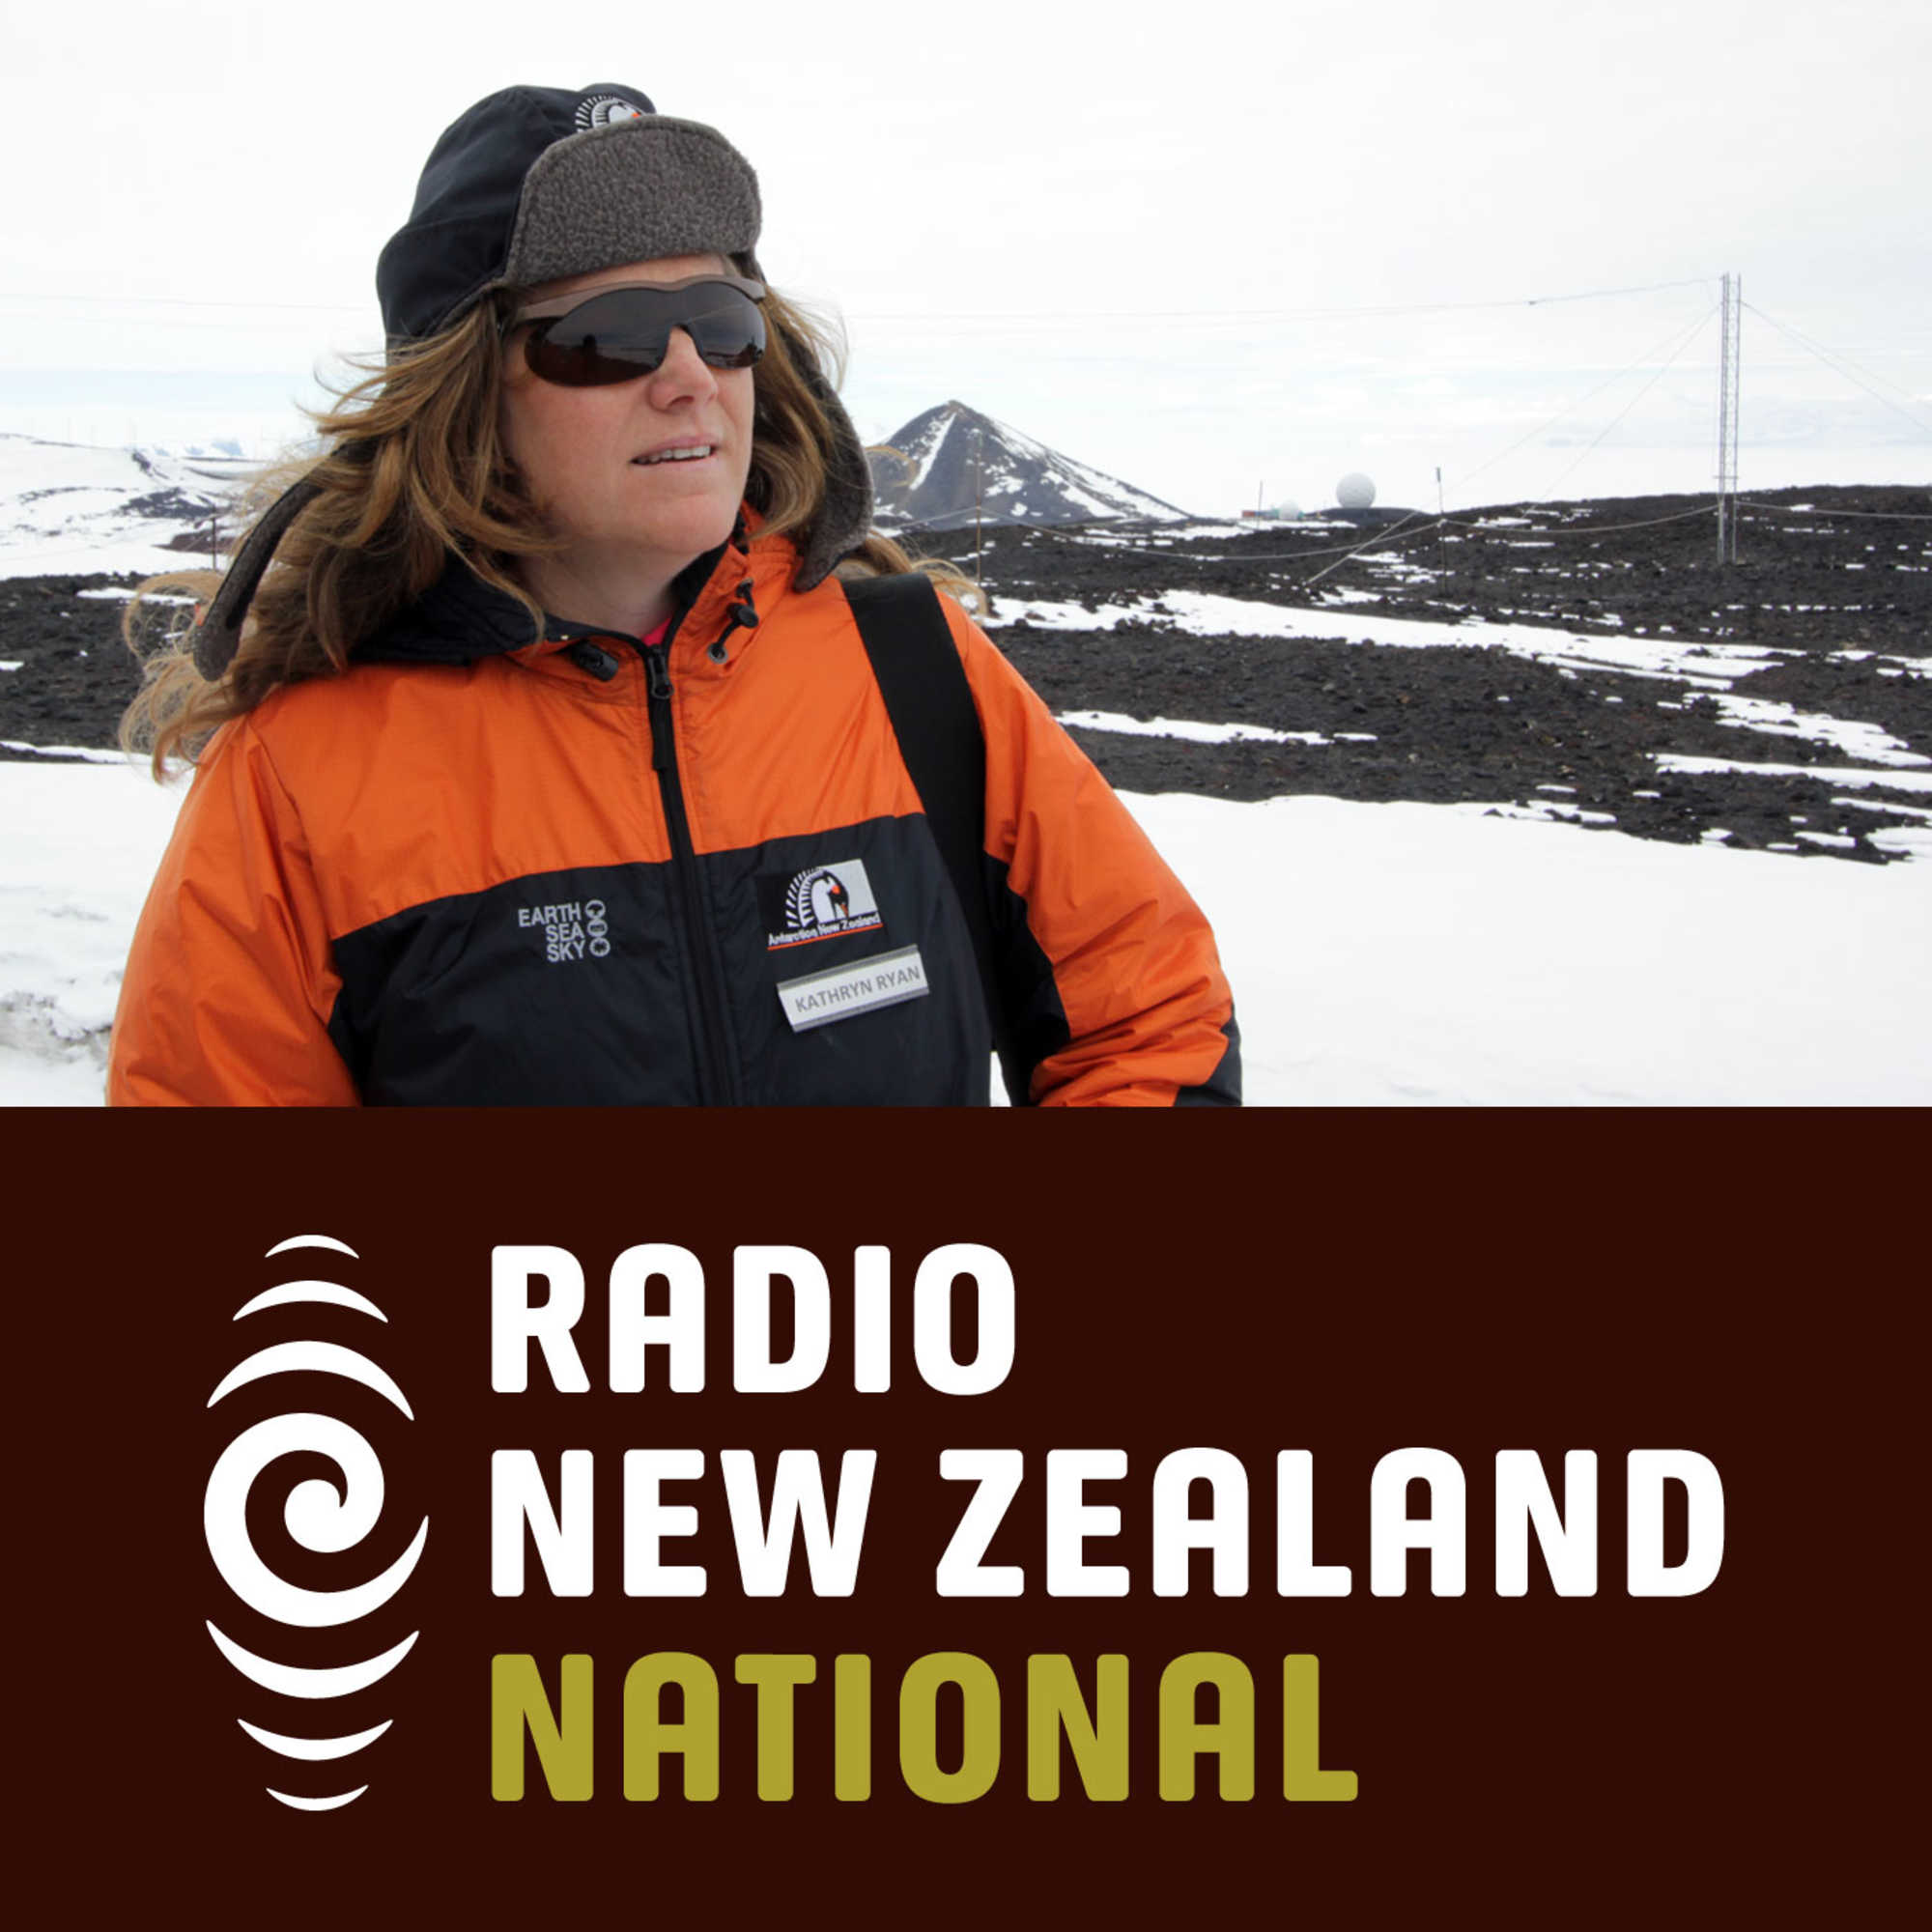 Nine to Noon in Antarctica - Adelie penguins